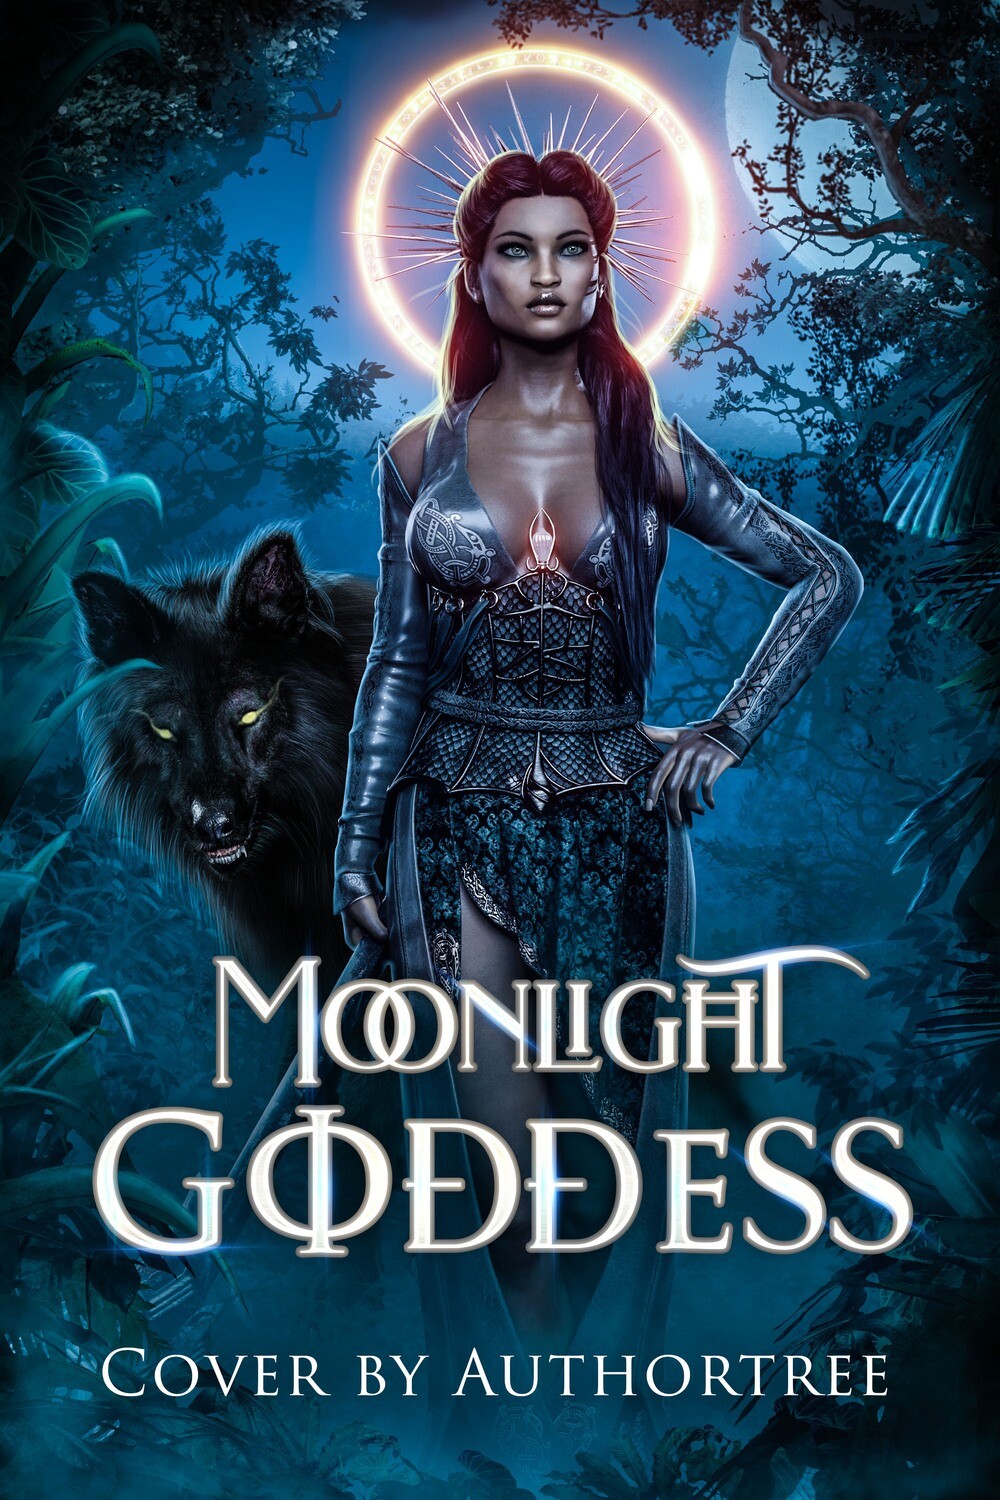 Moonlight Goddess